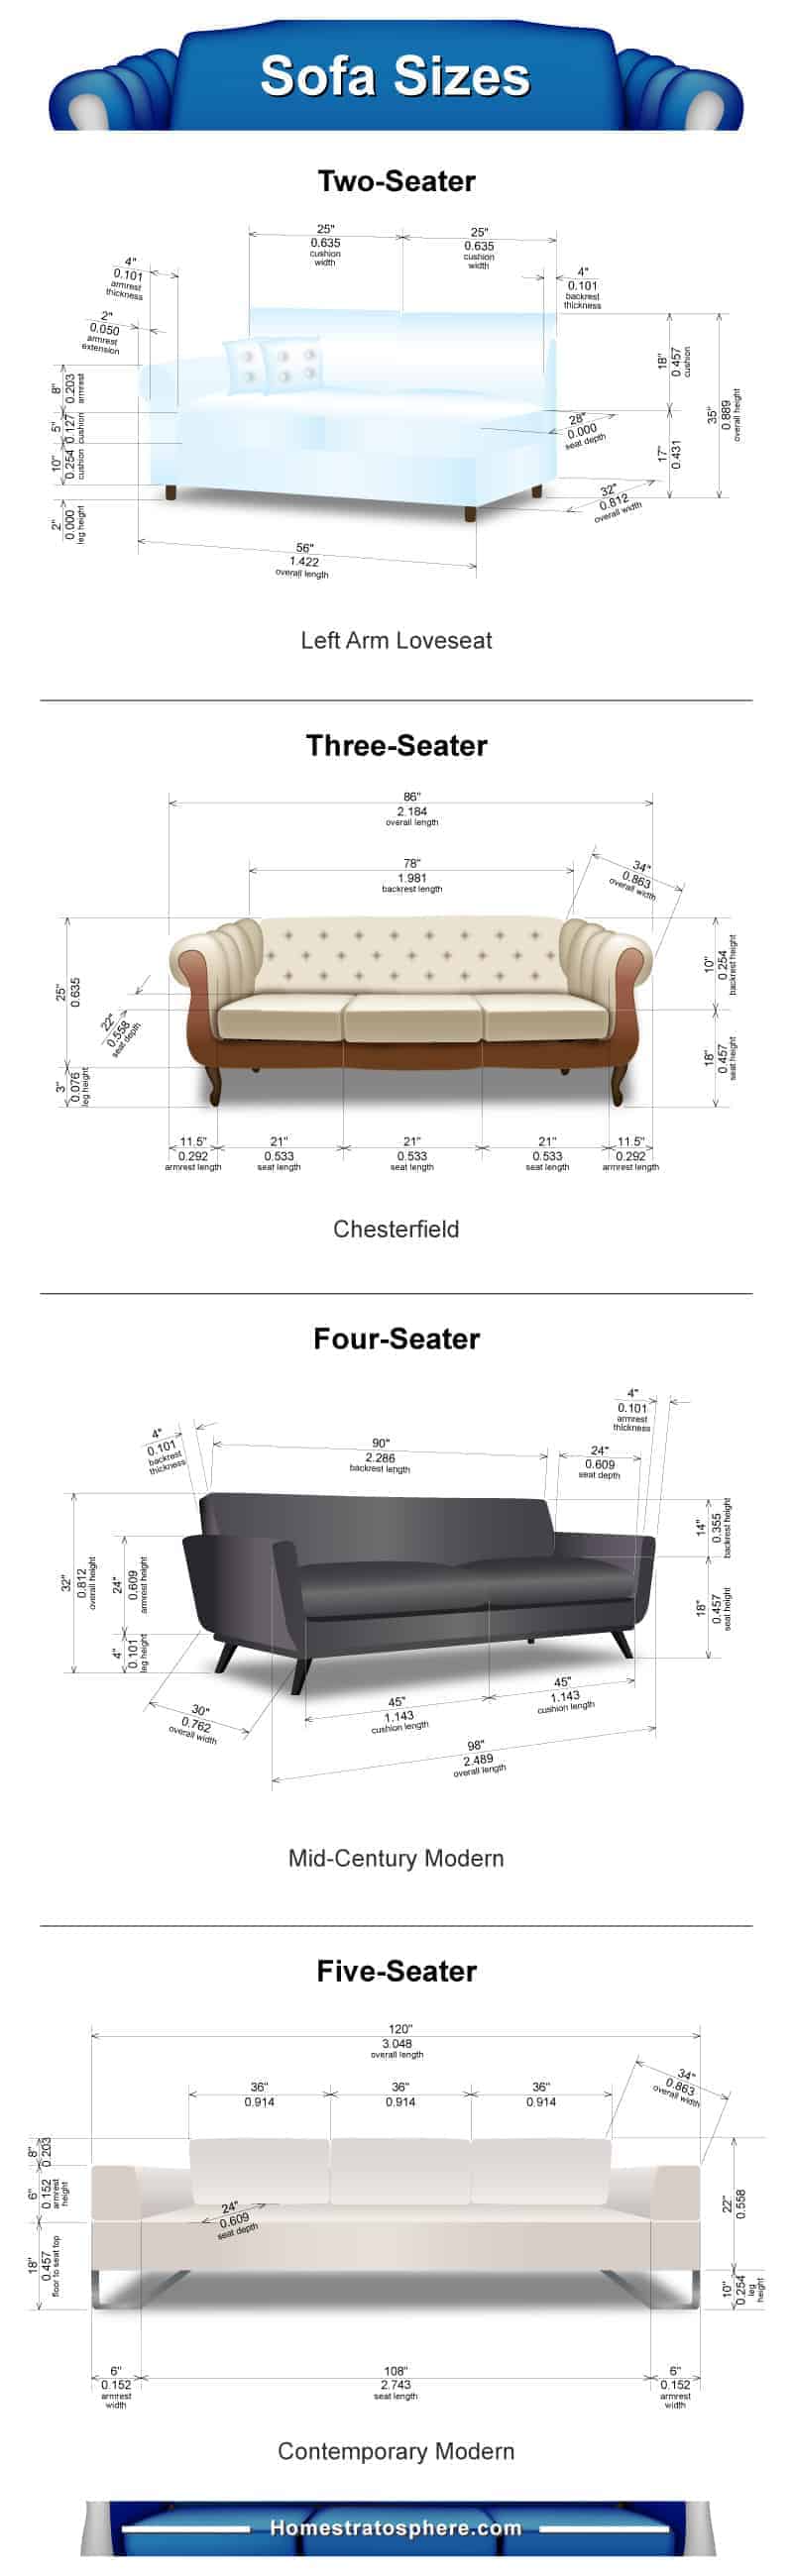 图表显示了适当的沙发尺寸根据它的座位的人数。